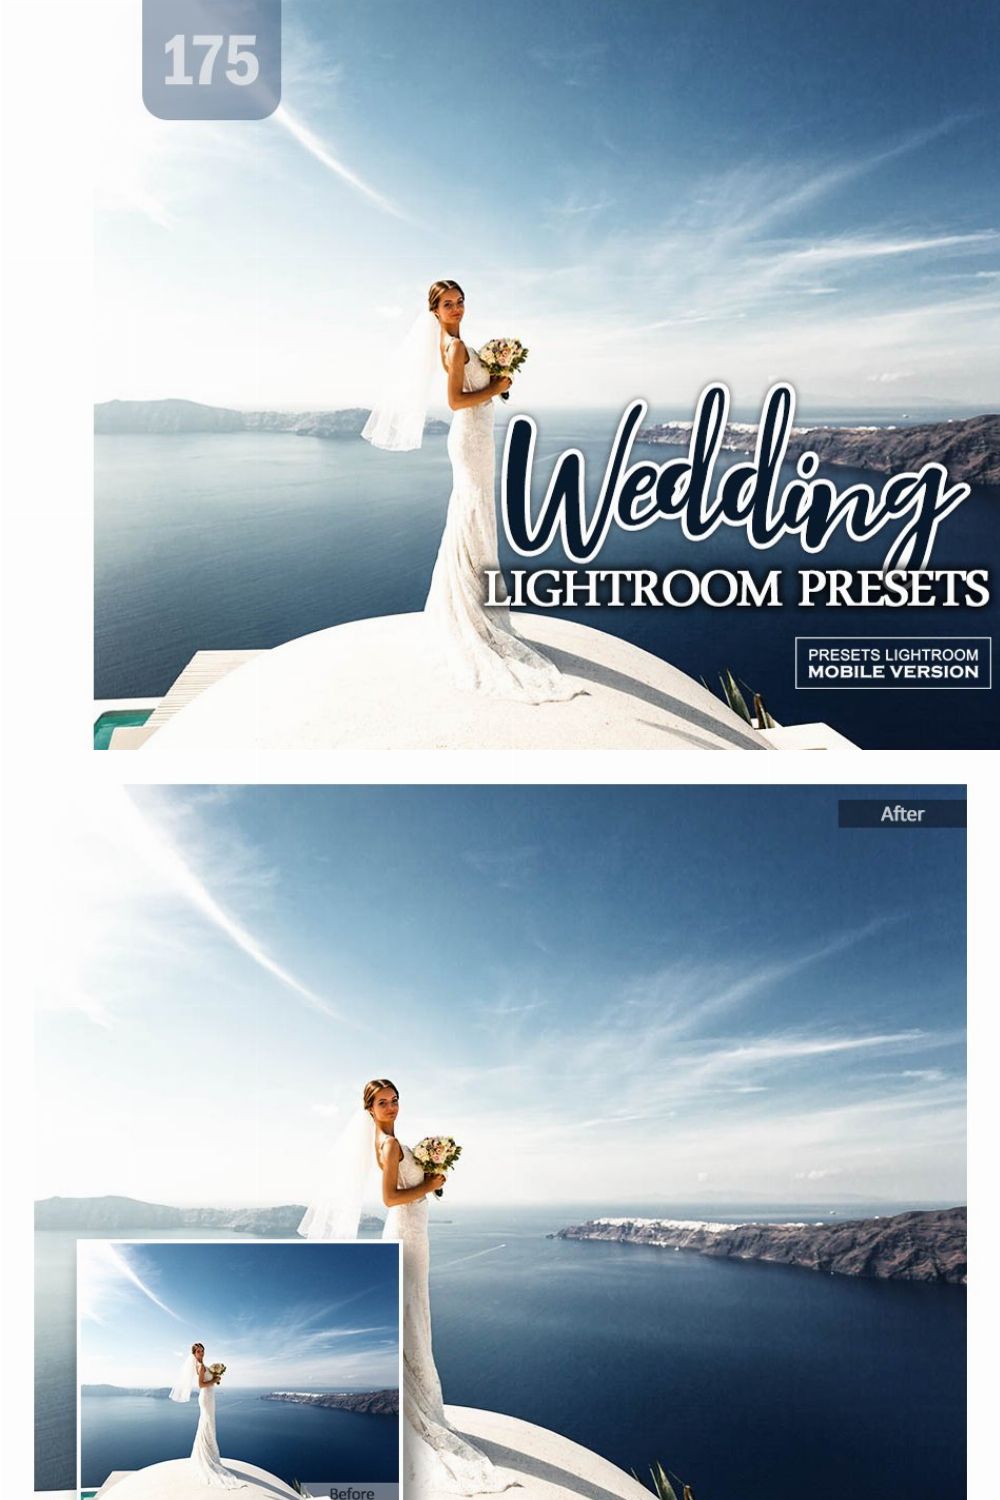 Wedding Lightroom Mobile Presets pinterest preview image.